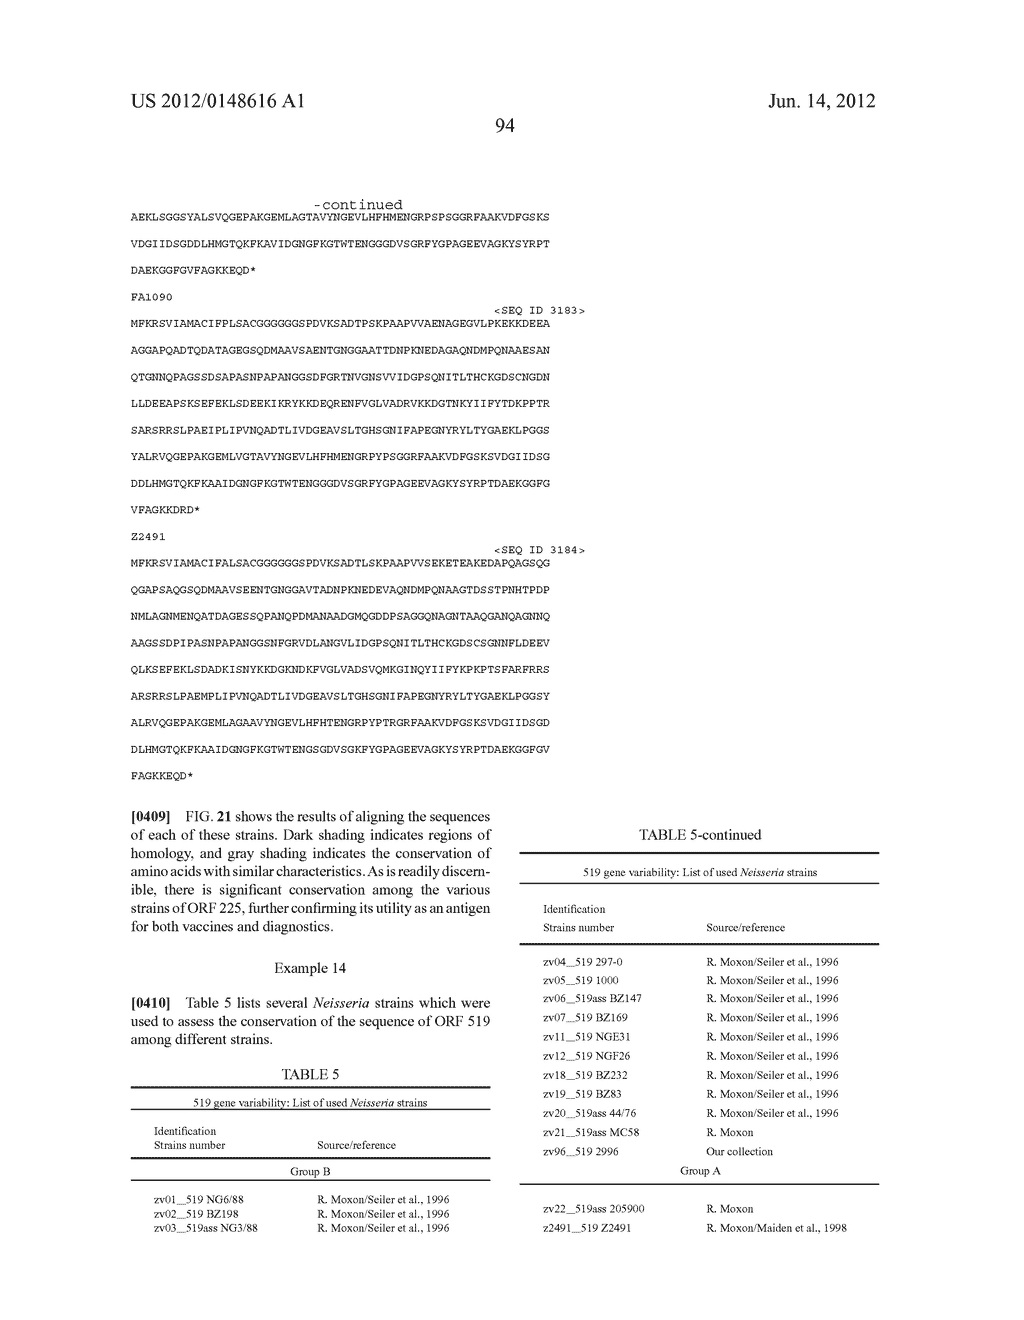 NEISSERIA MENINGITIDIS ANTIGENS AND COMPOSITIONS - diagram, schematic, and image 126